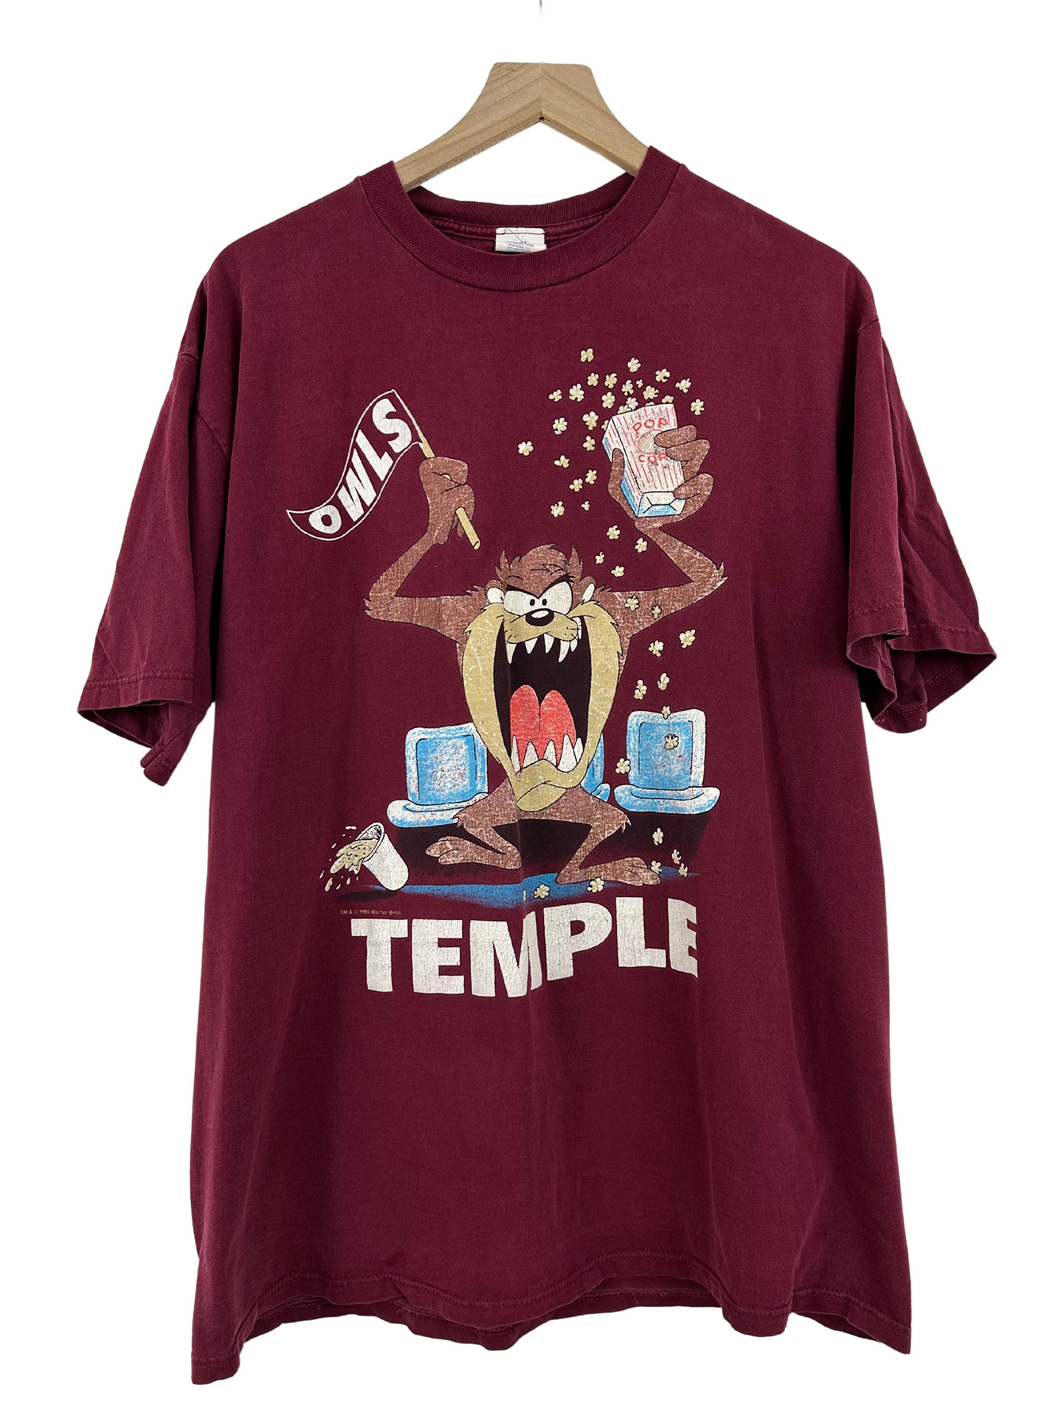 1993 Vintage Temple Owls x Tasmanian Devil T-Shirt